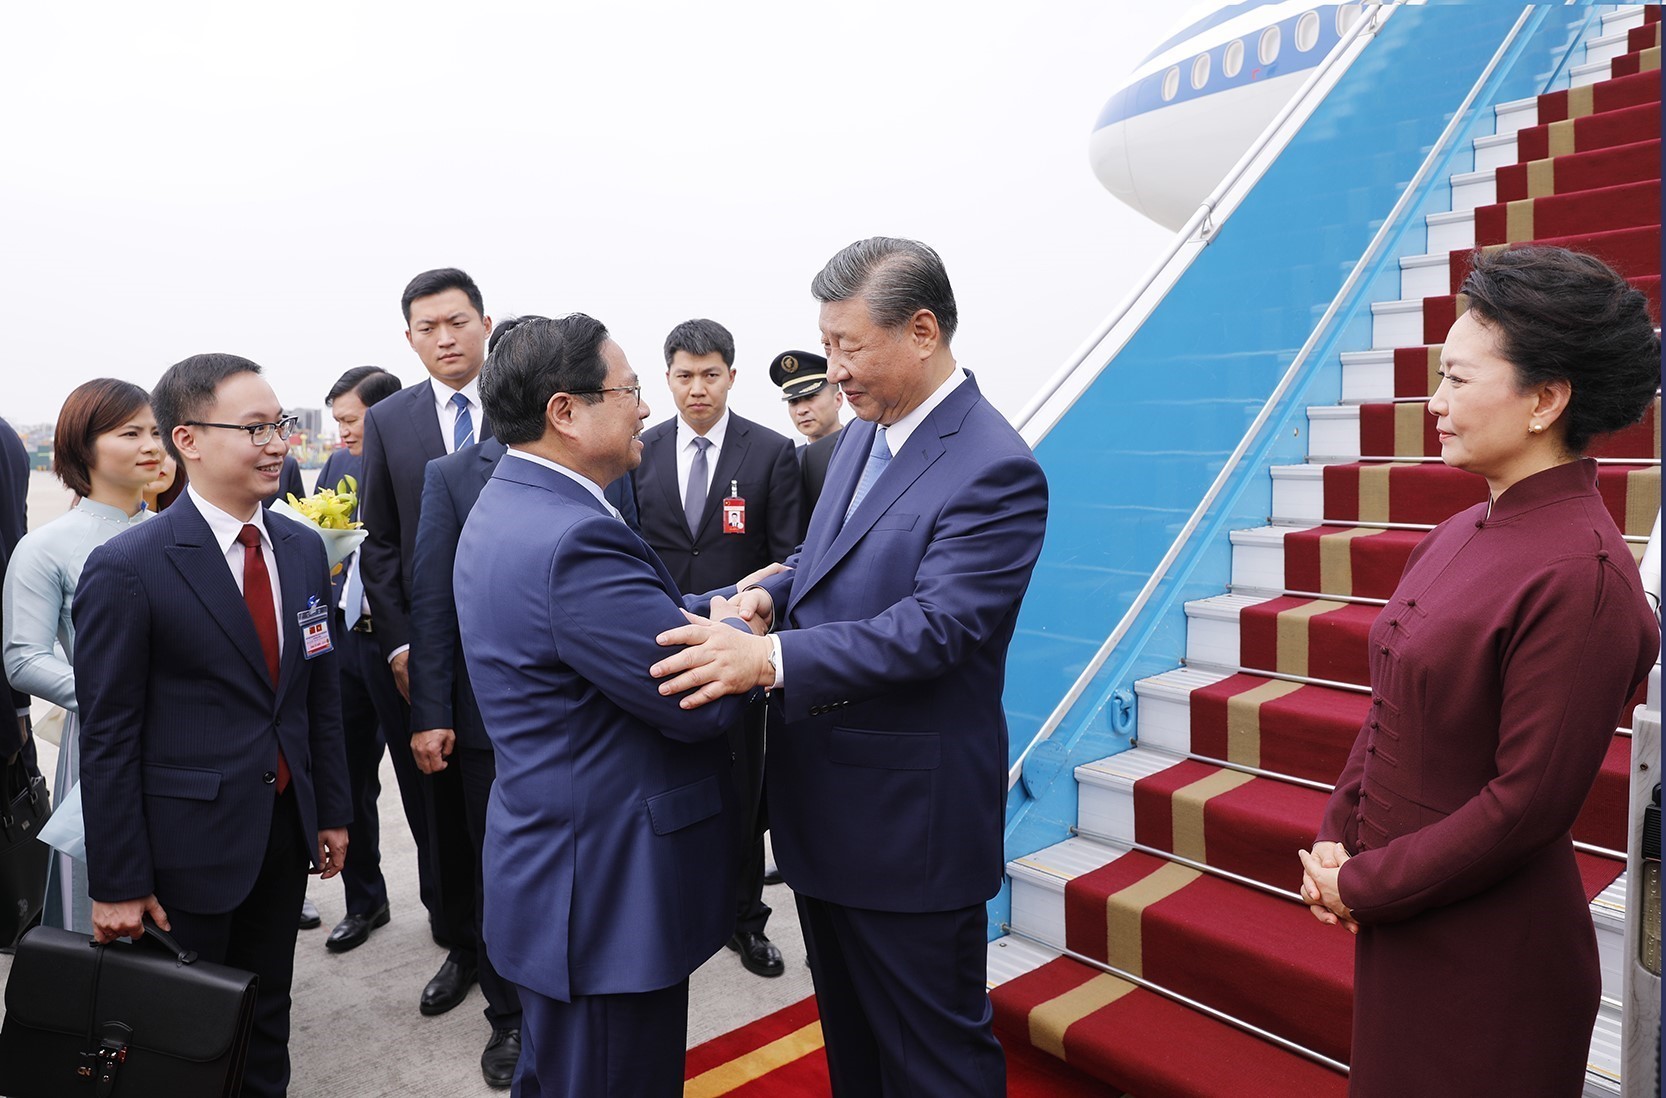 Tổng Bí thư, Chủ tịch nước Trung Quốc Tập Cận Bình đến Hà Nội, bắt đầu chuyến thăm Việt Nam - Ảnh 2.